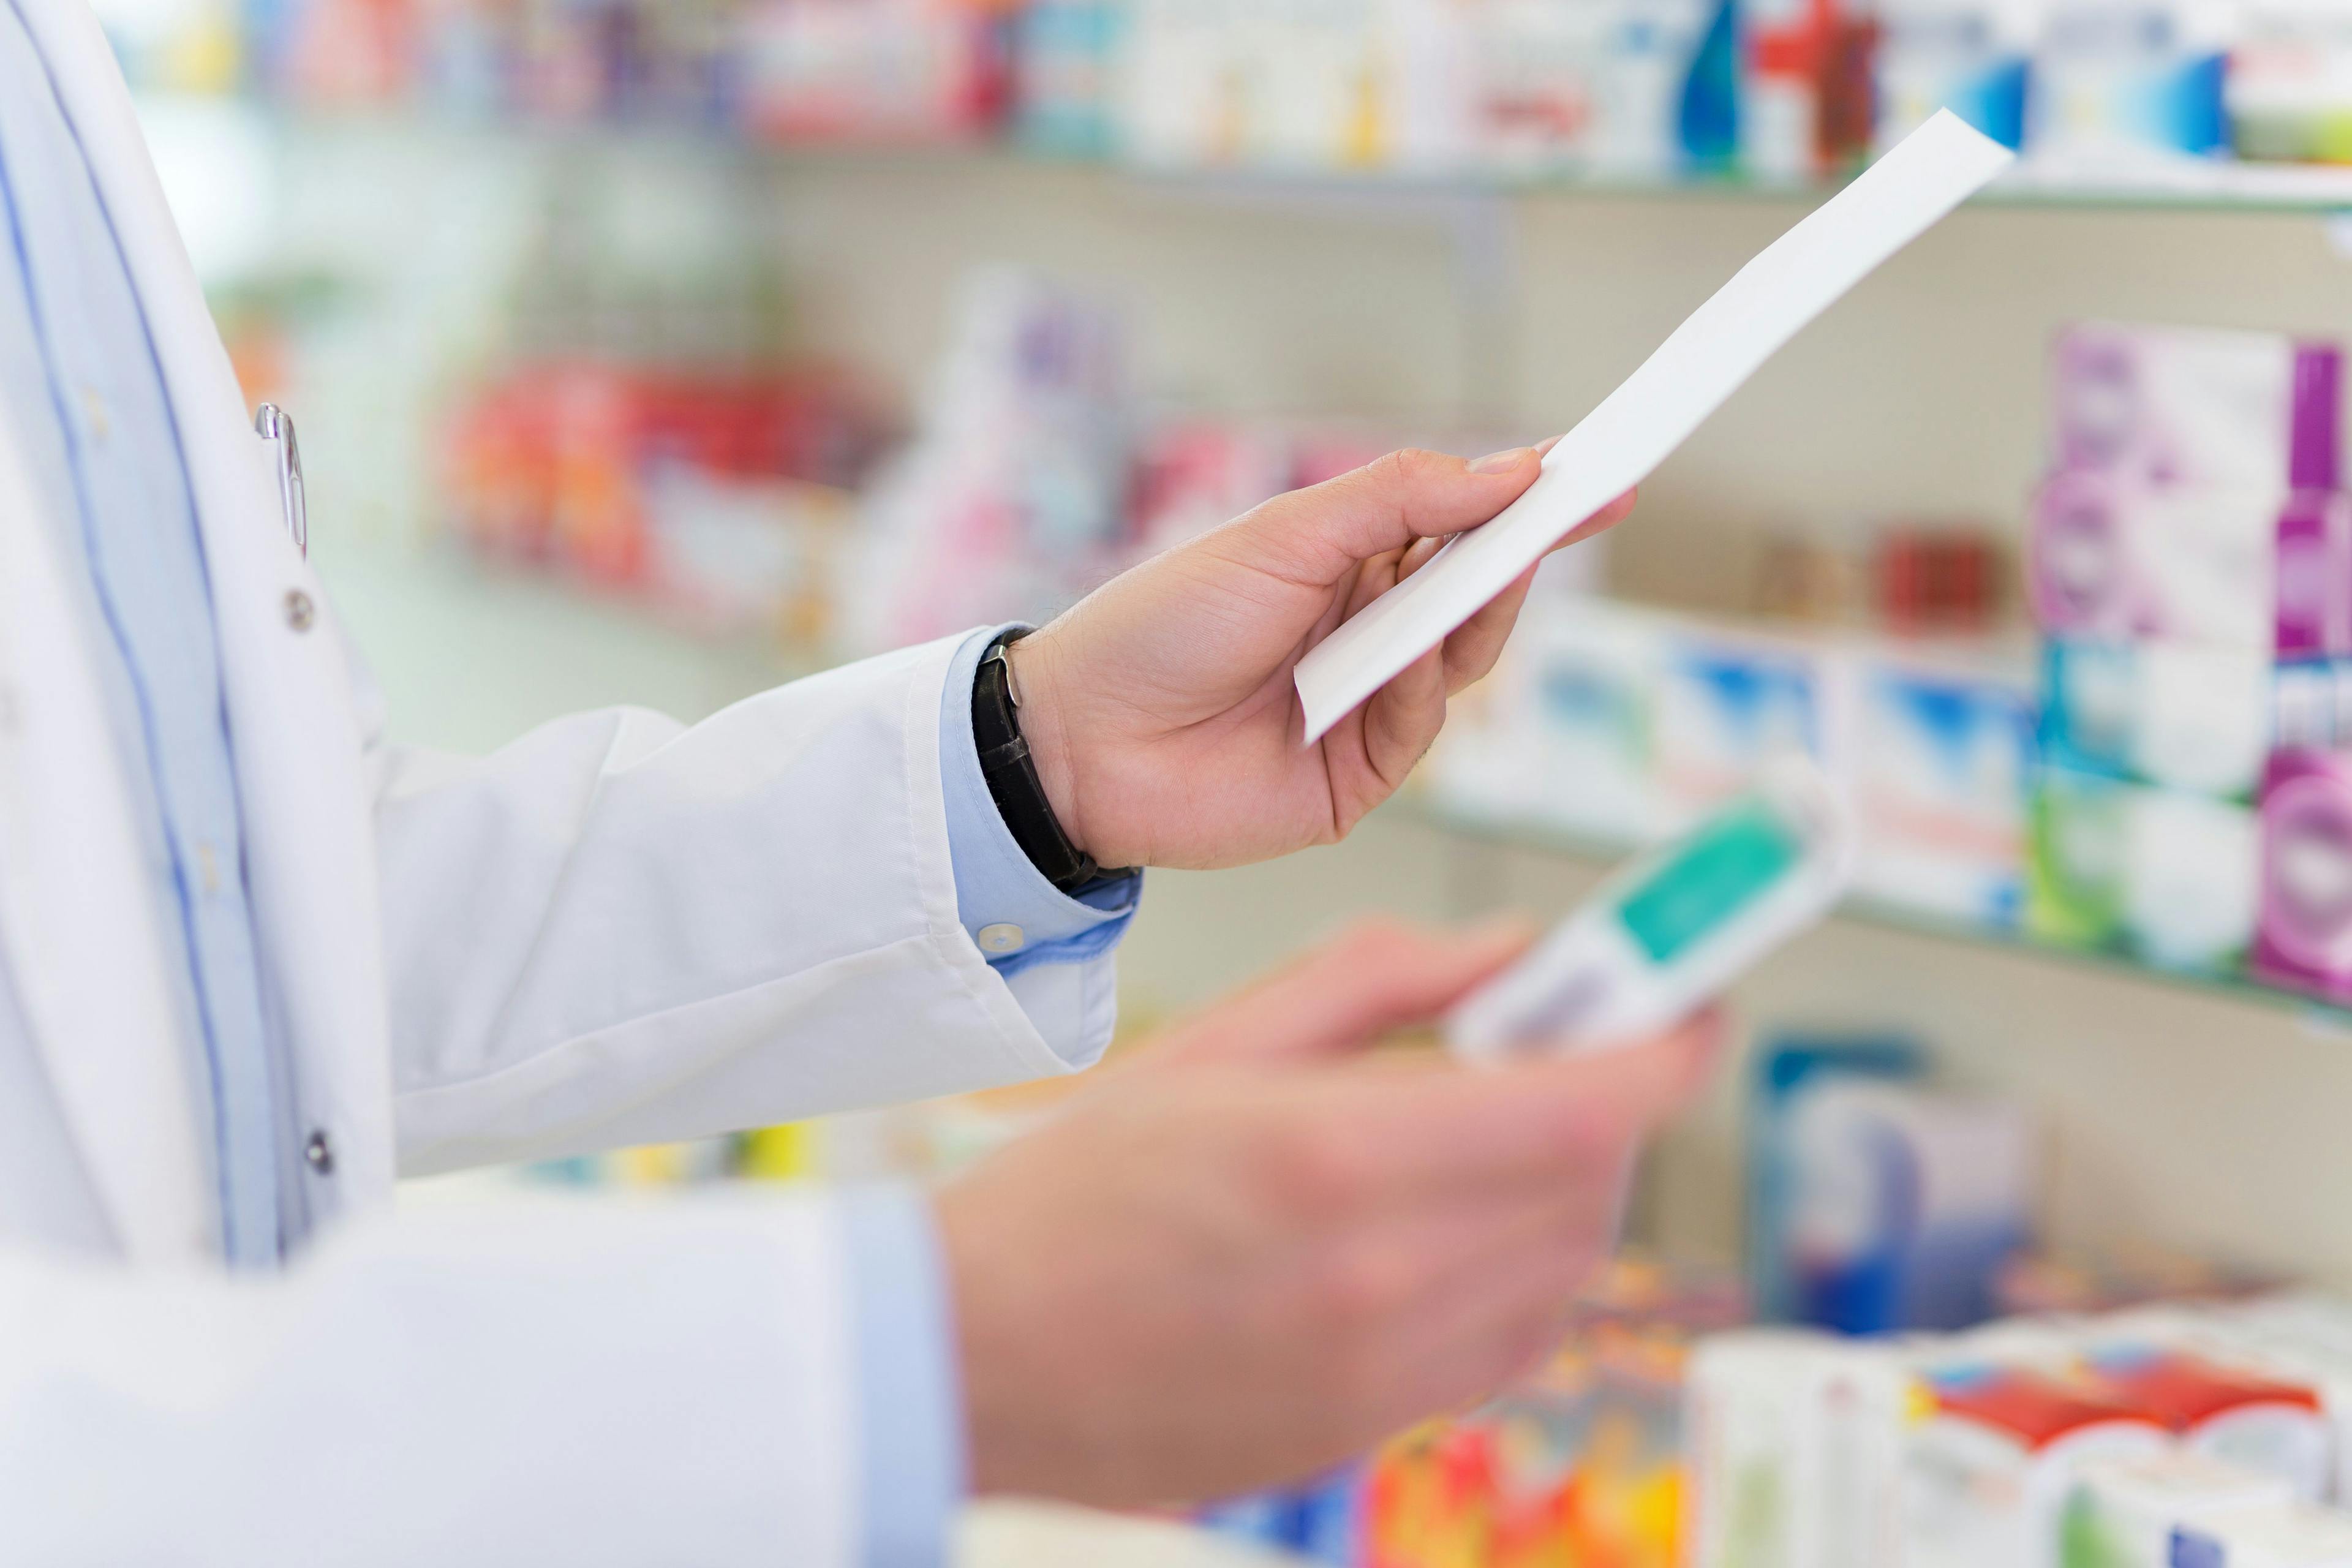 Pharmacist filling prescription in pharmacy | Image Credit: pikselstock - stock.adobe.com